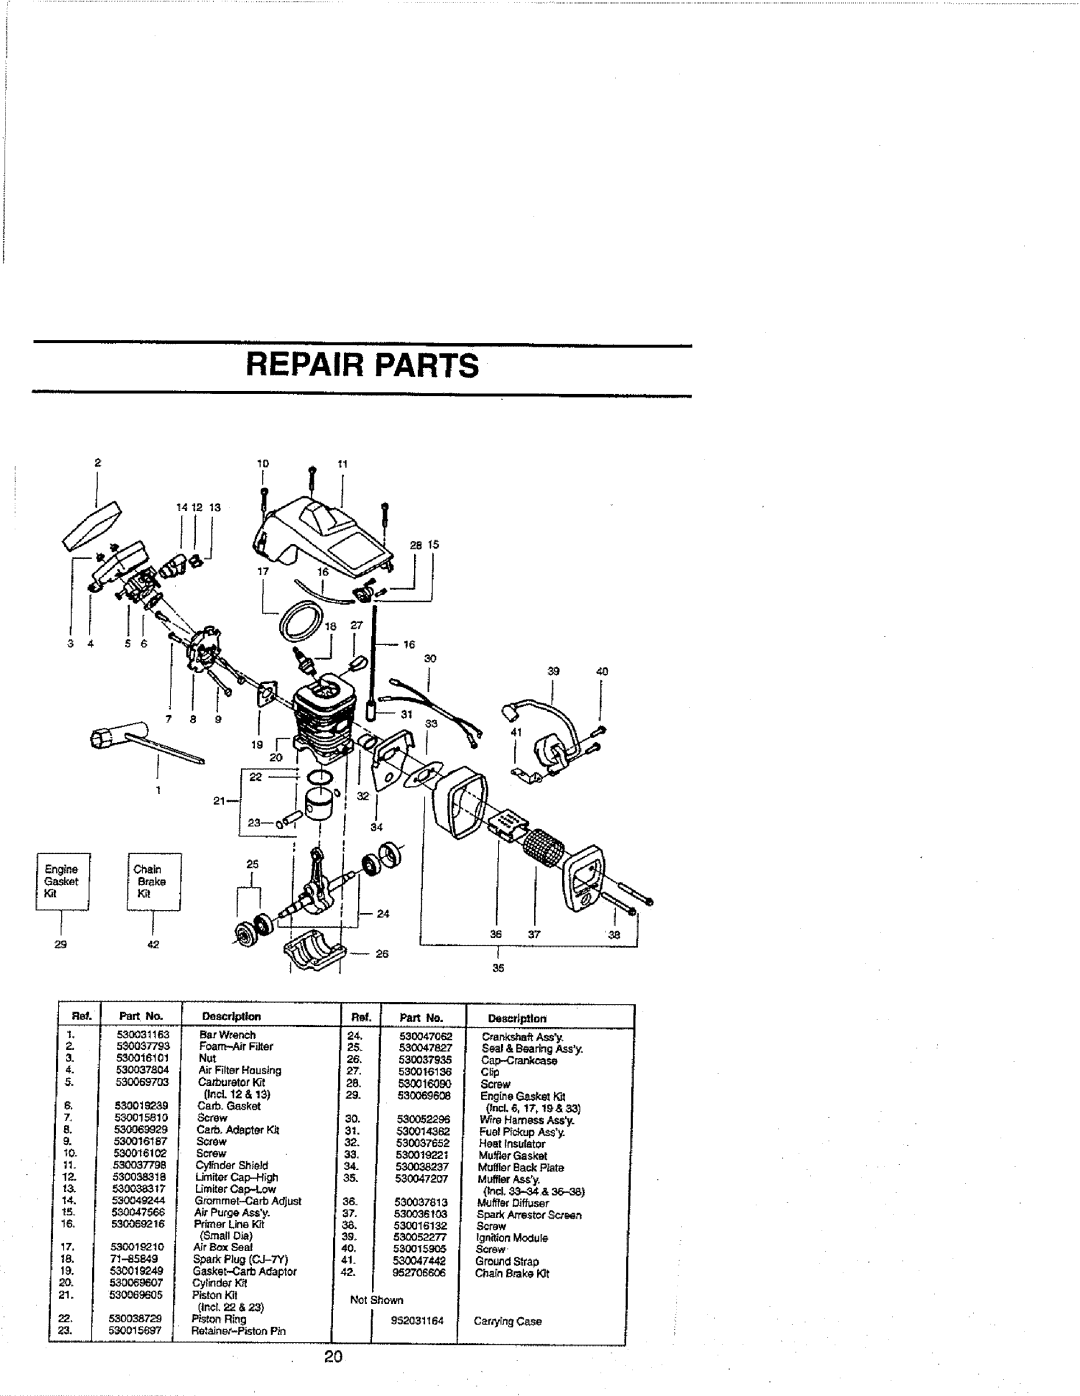 Craftsman 358.352680 - 18 IN. BAR lUlnlIIIIIIIHII, IIIn, Repair Parts, SmallO_a, PistonRing, Spark AnesterSc1_en, Screw 